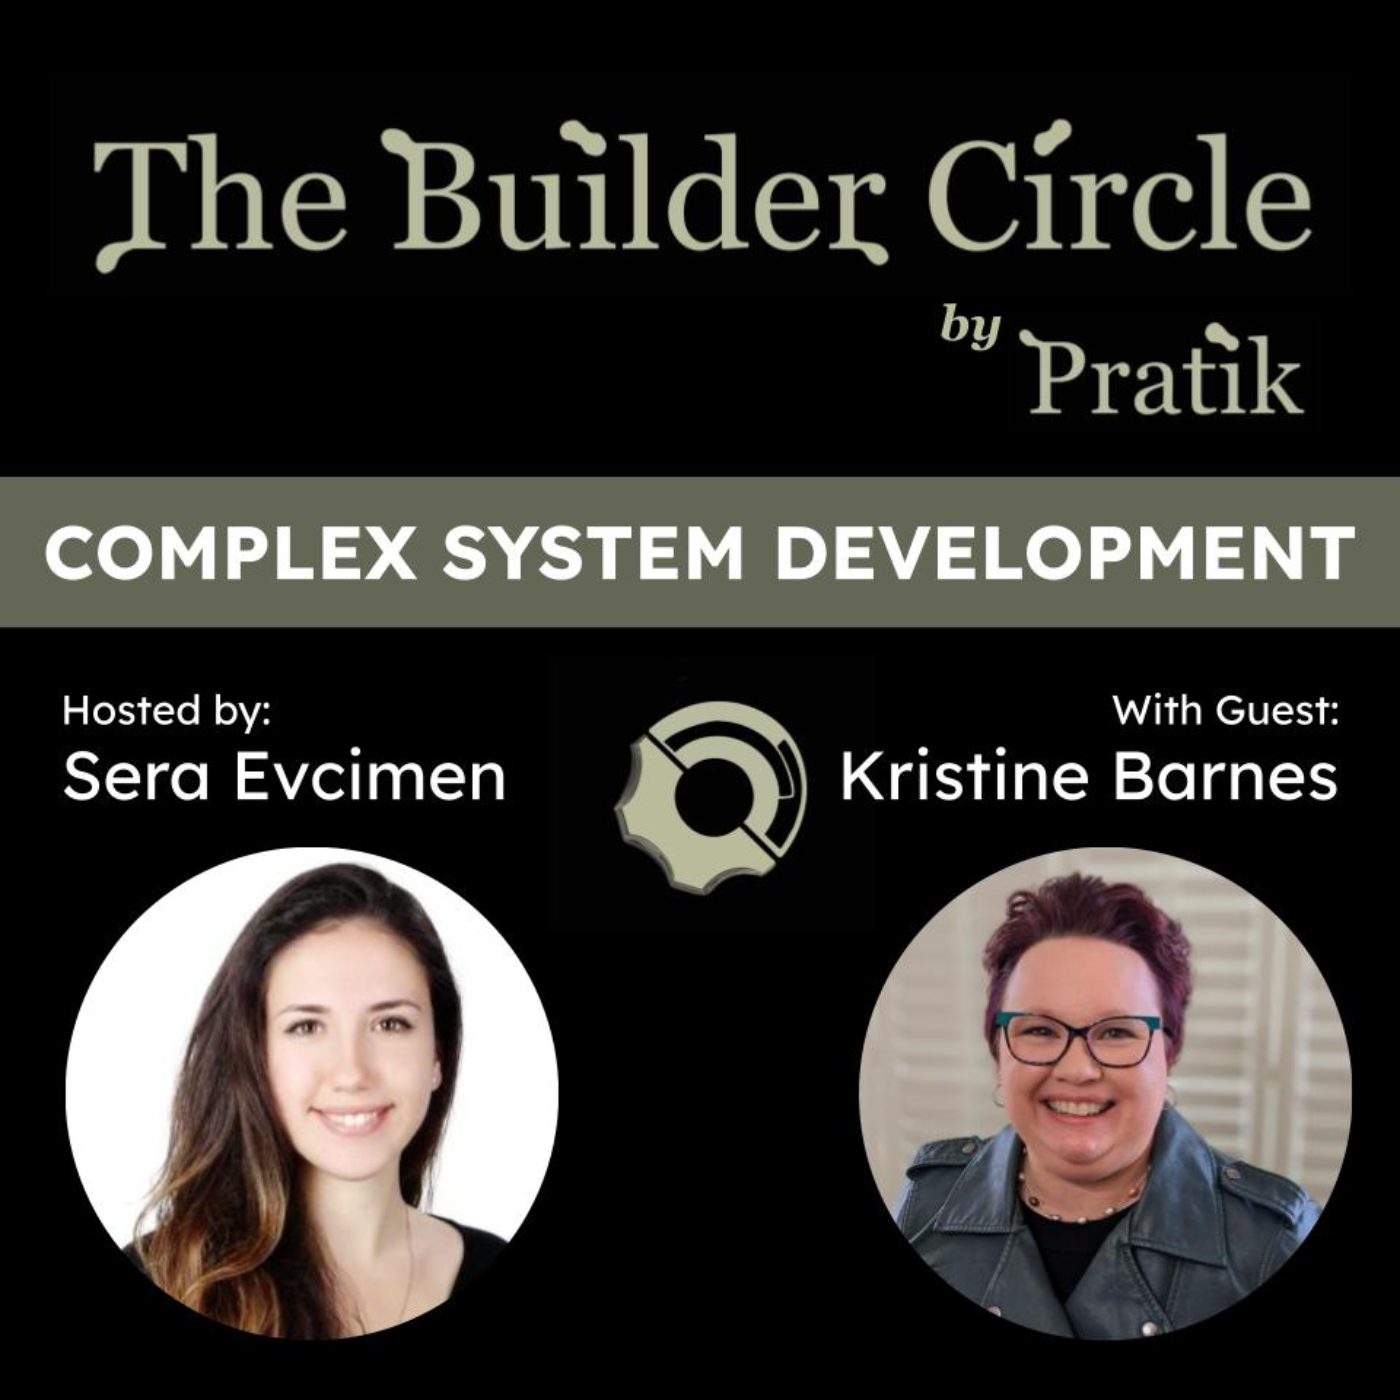 S2 E6: Complex System Development with Kristine Barnes